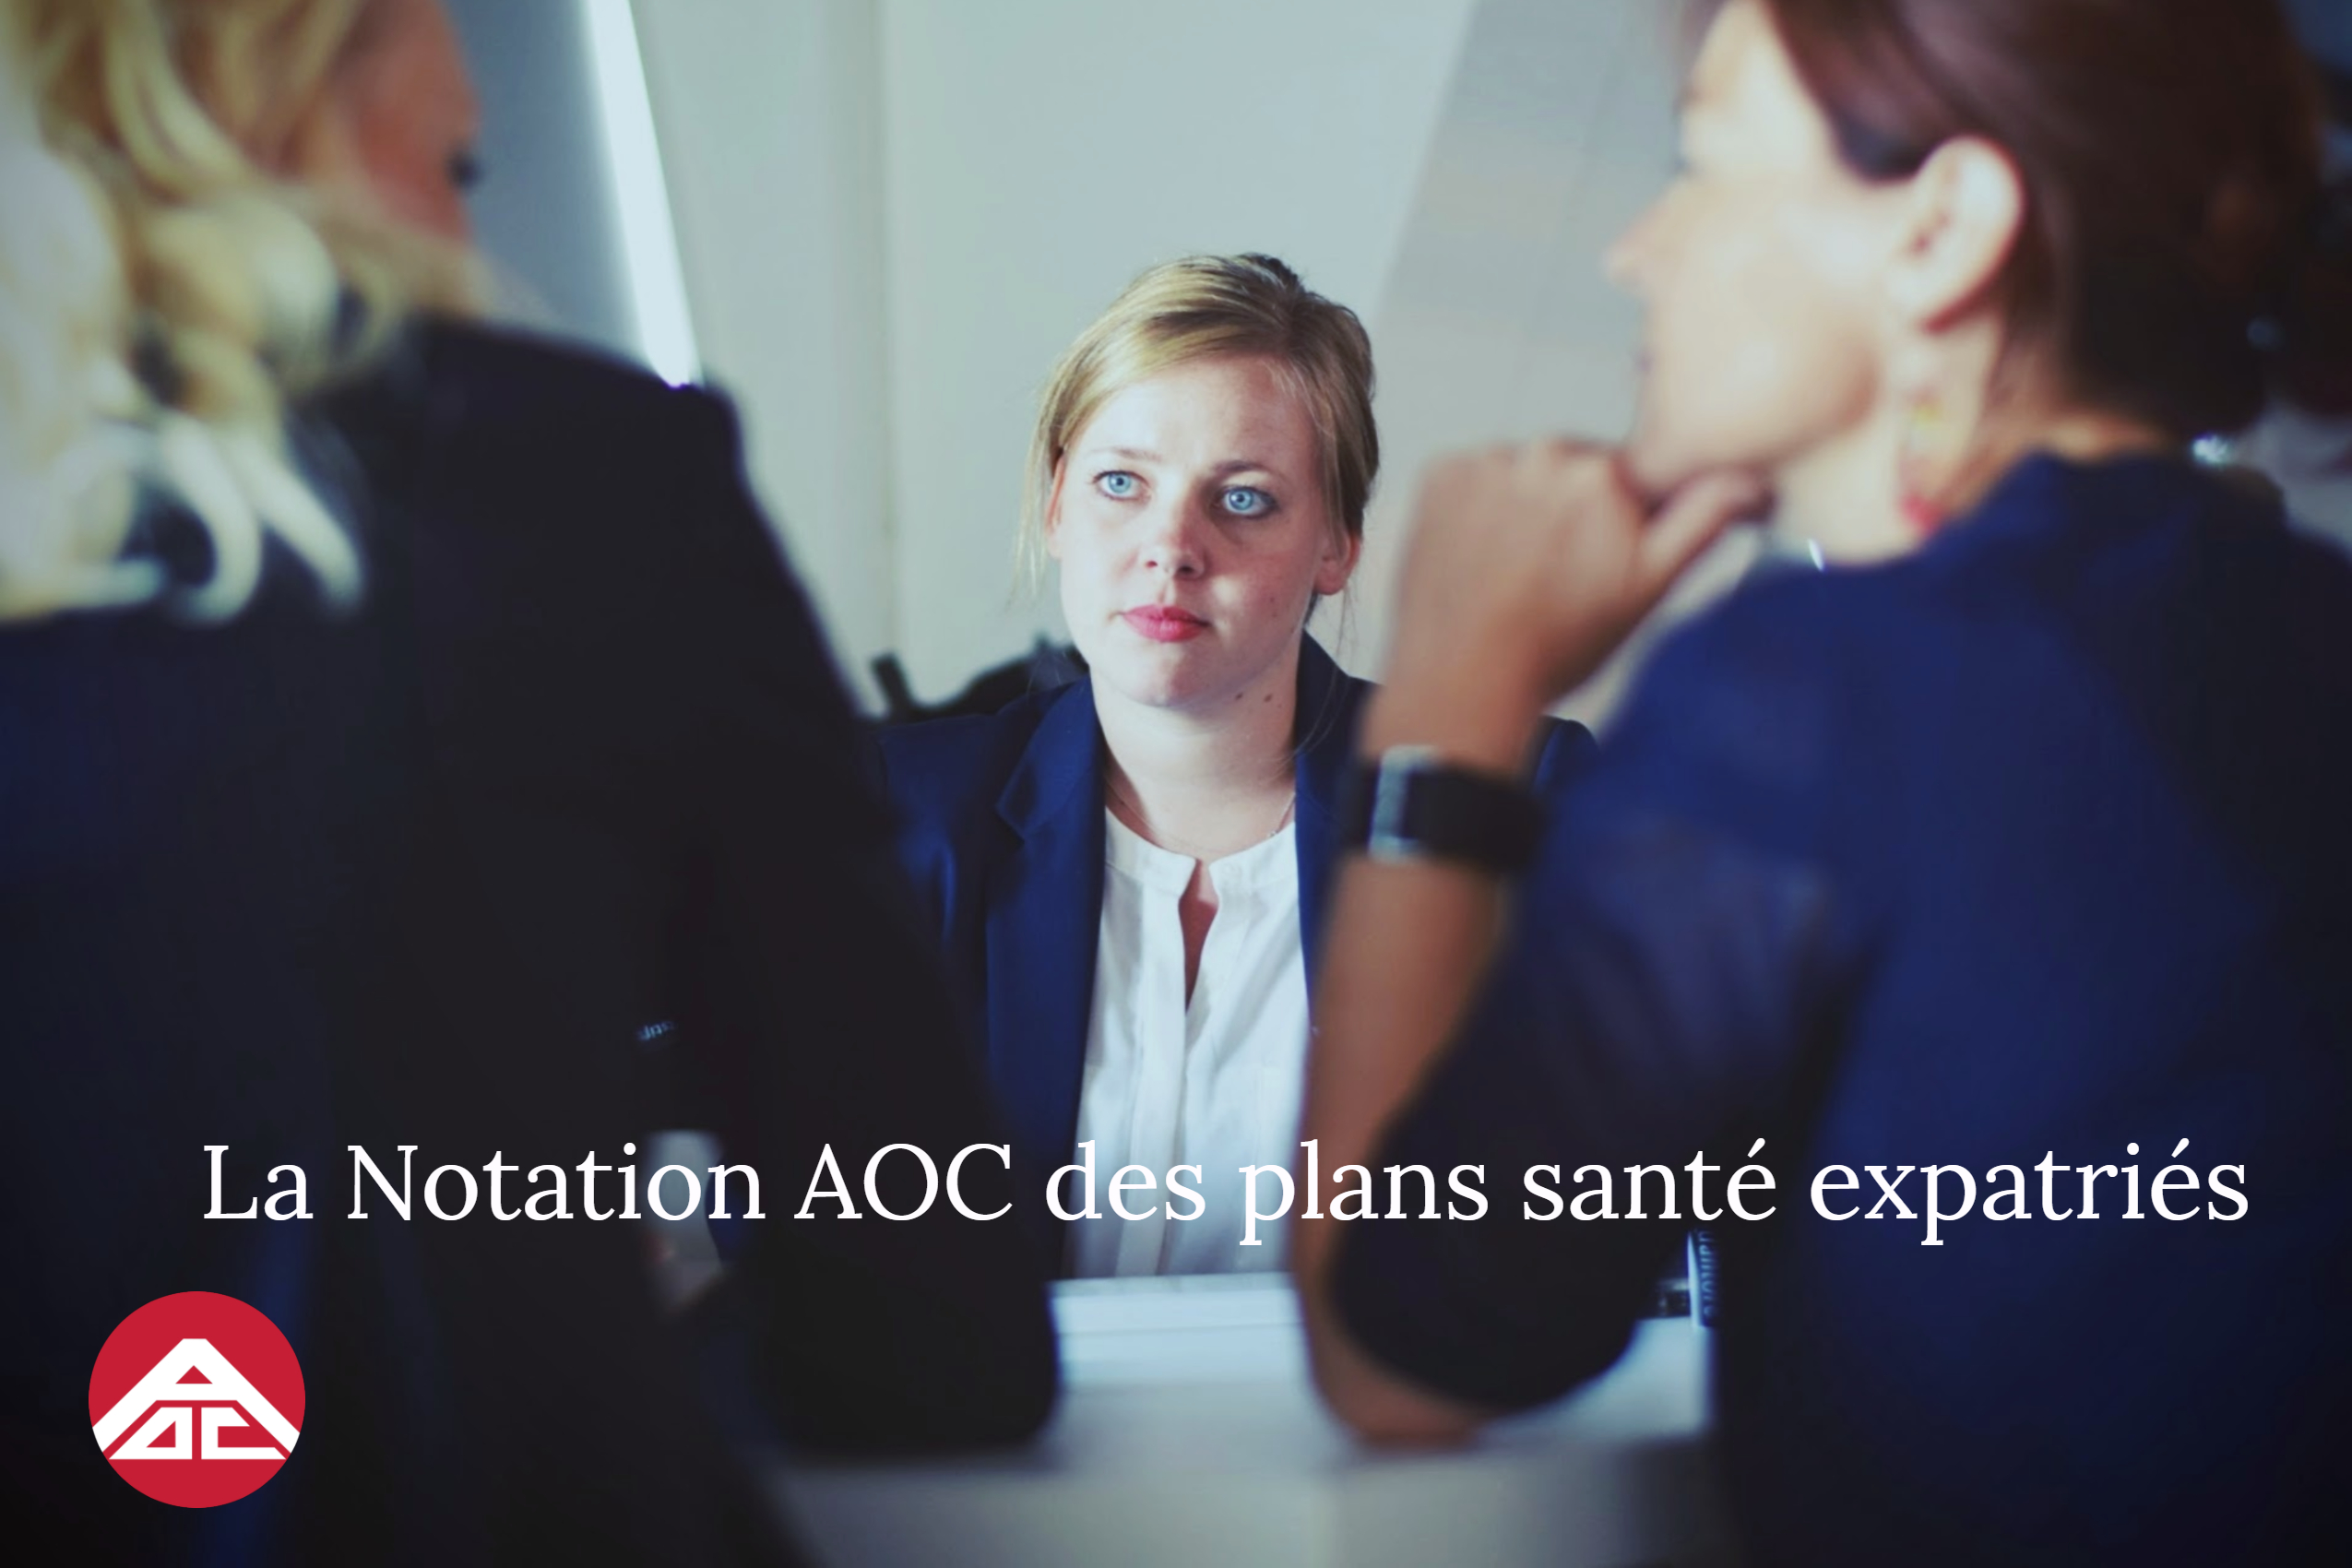 Aoc_assurance_La_Notation_AOC_des_plans_santé_expatriés.jpg